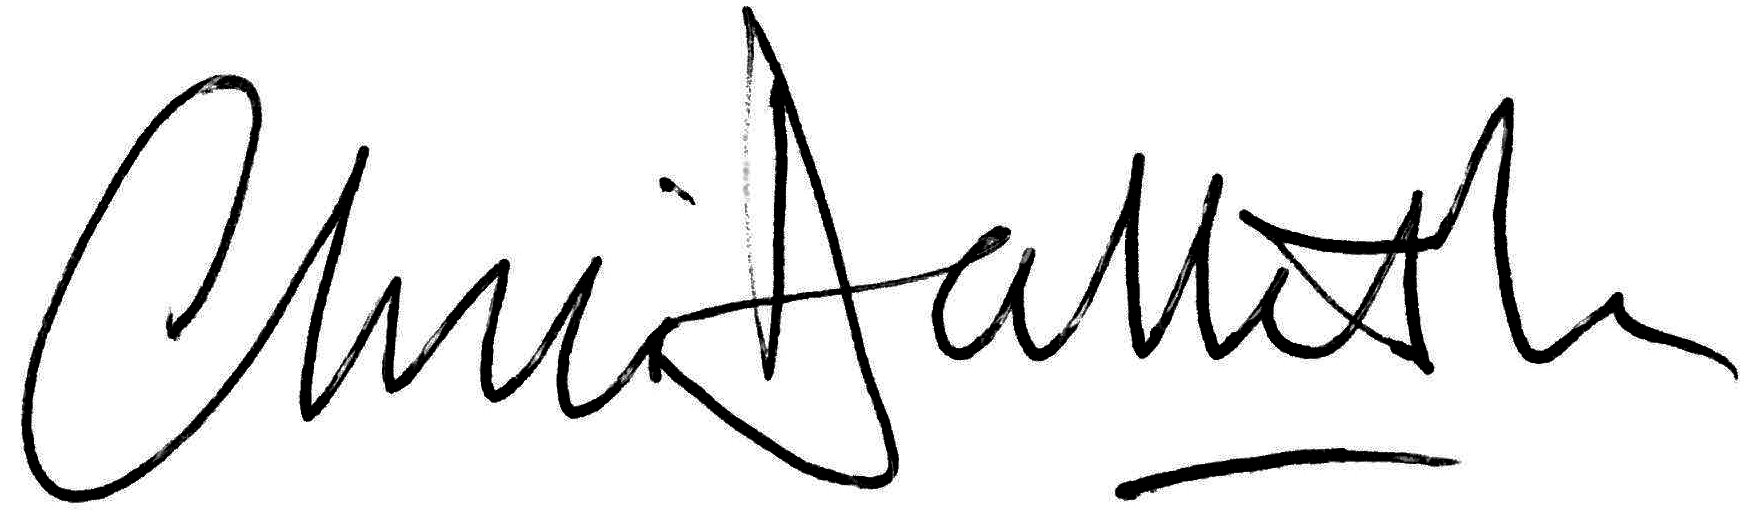 Chris Dalliston signature